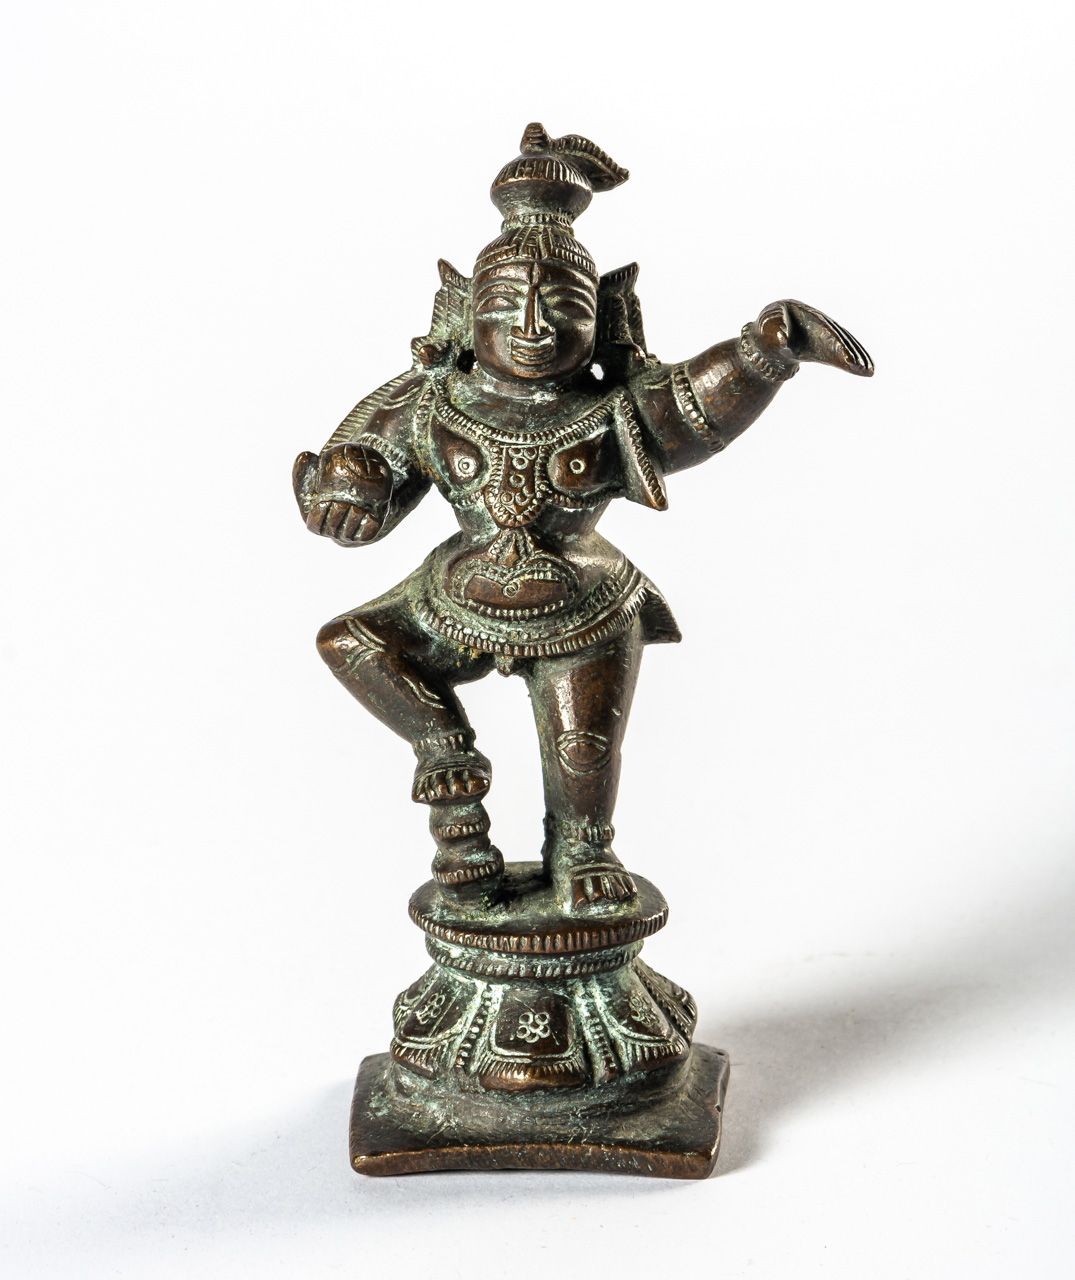 KRISHNA 印度，青铜器，大概在1900年左右

11厘米高





印度的克里希纳铜像

可能是在1900年左右

11厘米高